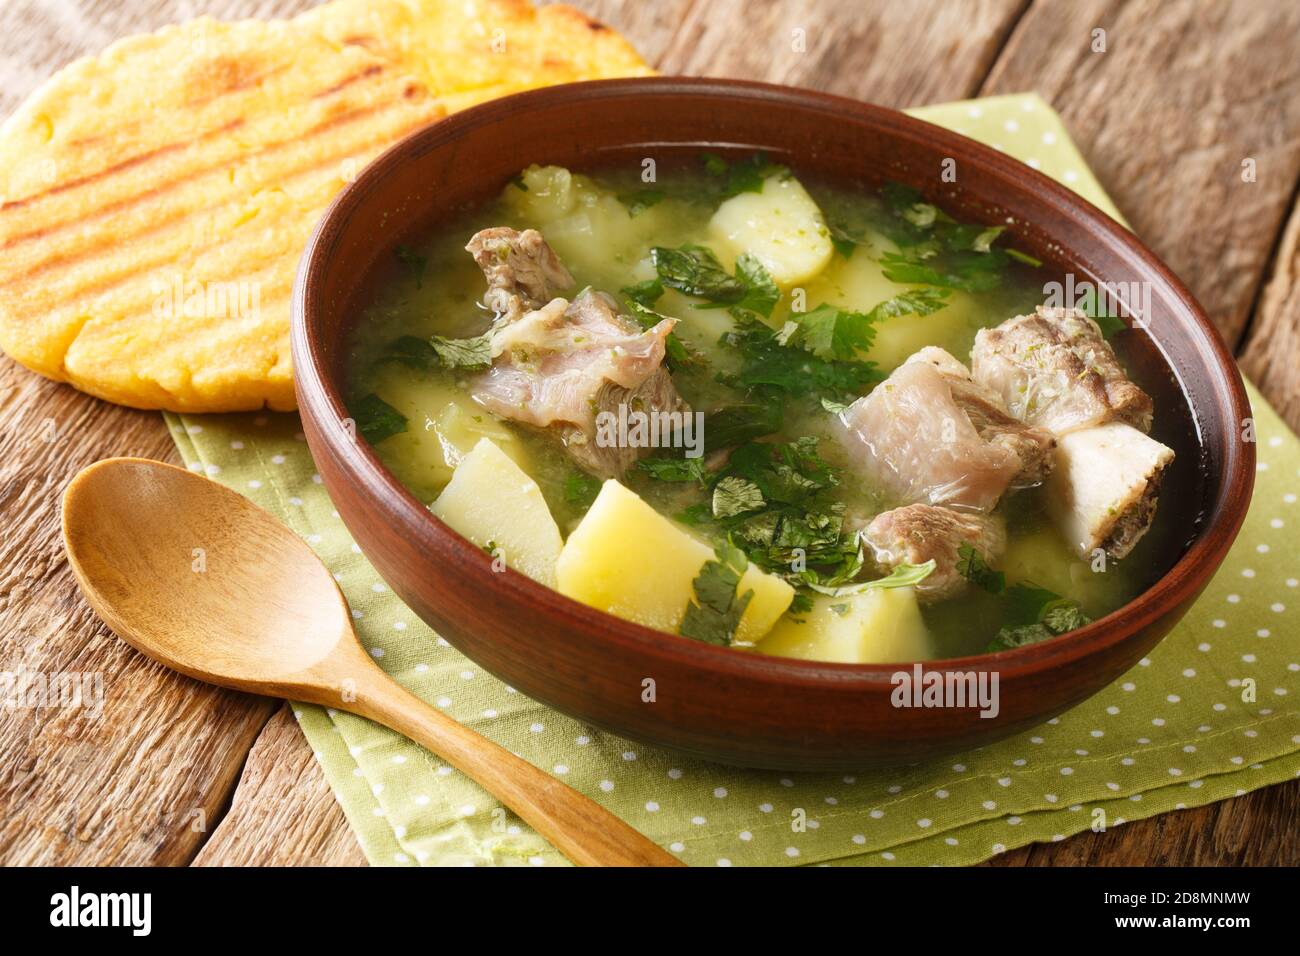 Délicieuse soupe traditionnelle de côtes de bœuf avec pommes de terre et herbes Caldo de costilla dans un bol sur la table. Horizontale Banque D'Images